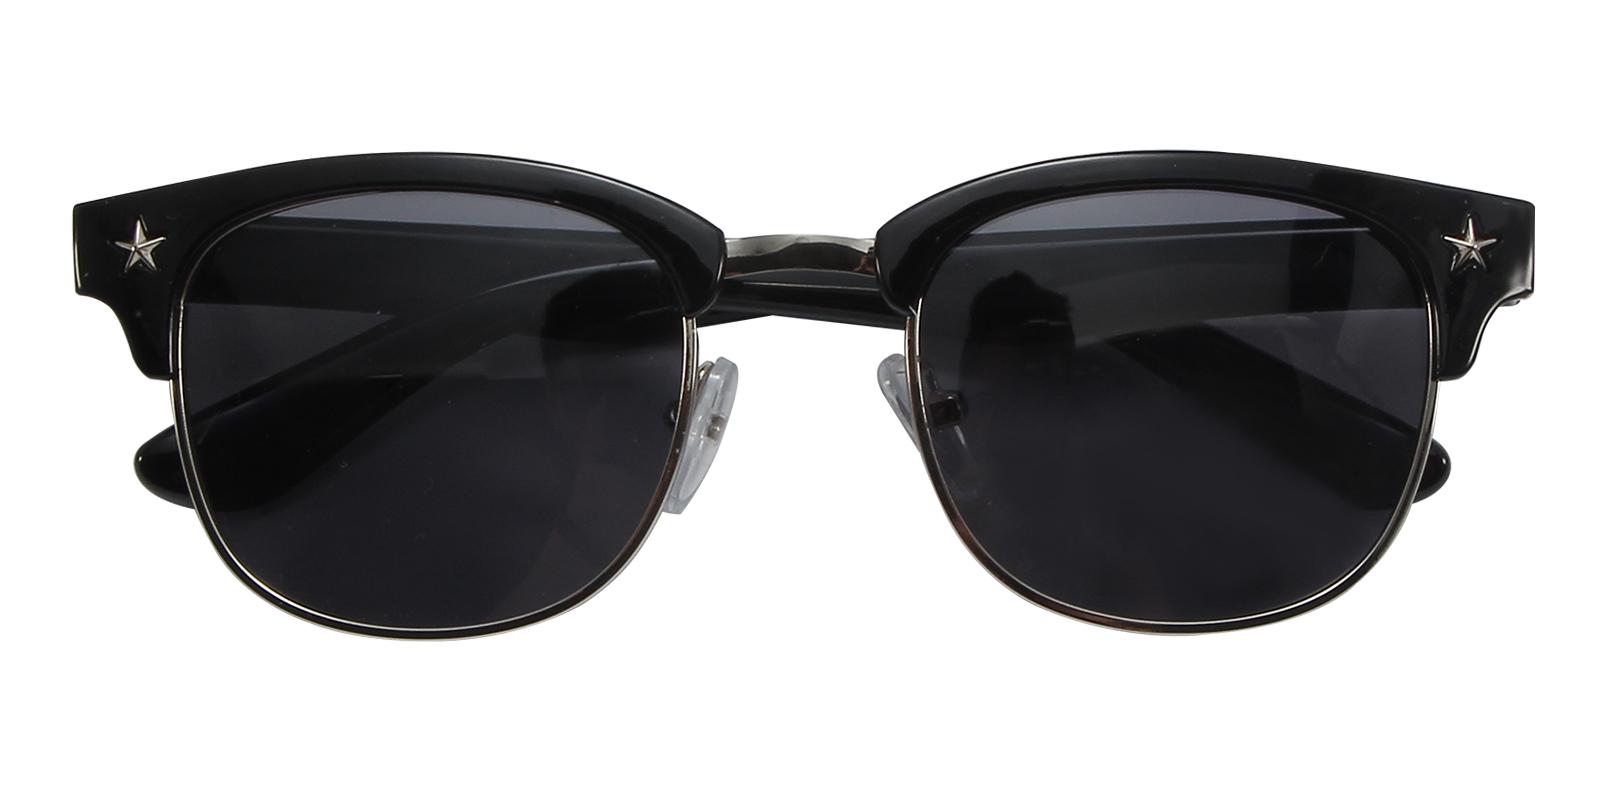 Shimmer Black TR NosePads , Sunglasses Frames from ABBE Glasses